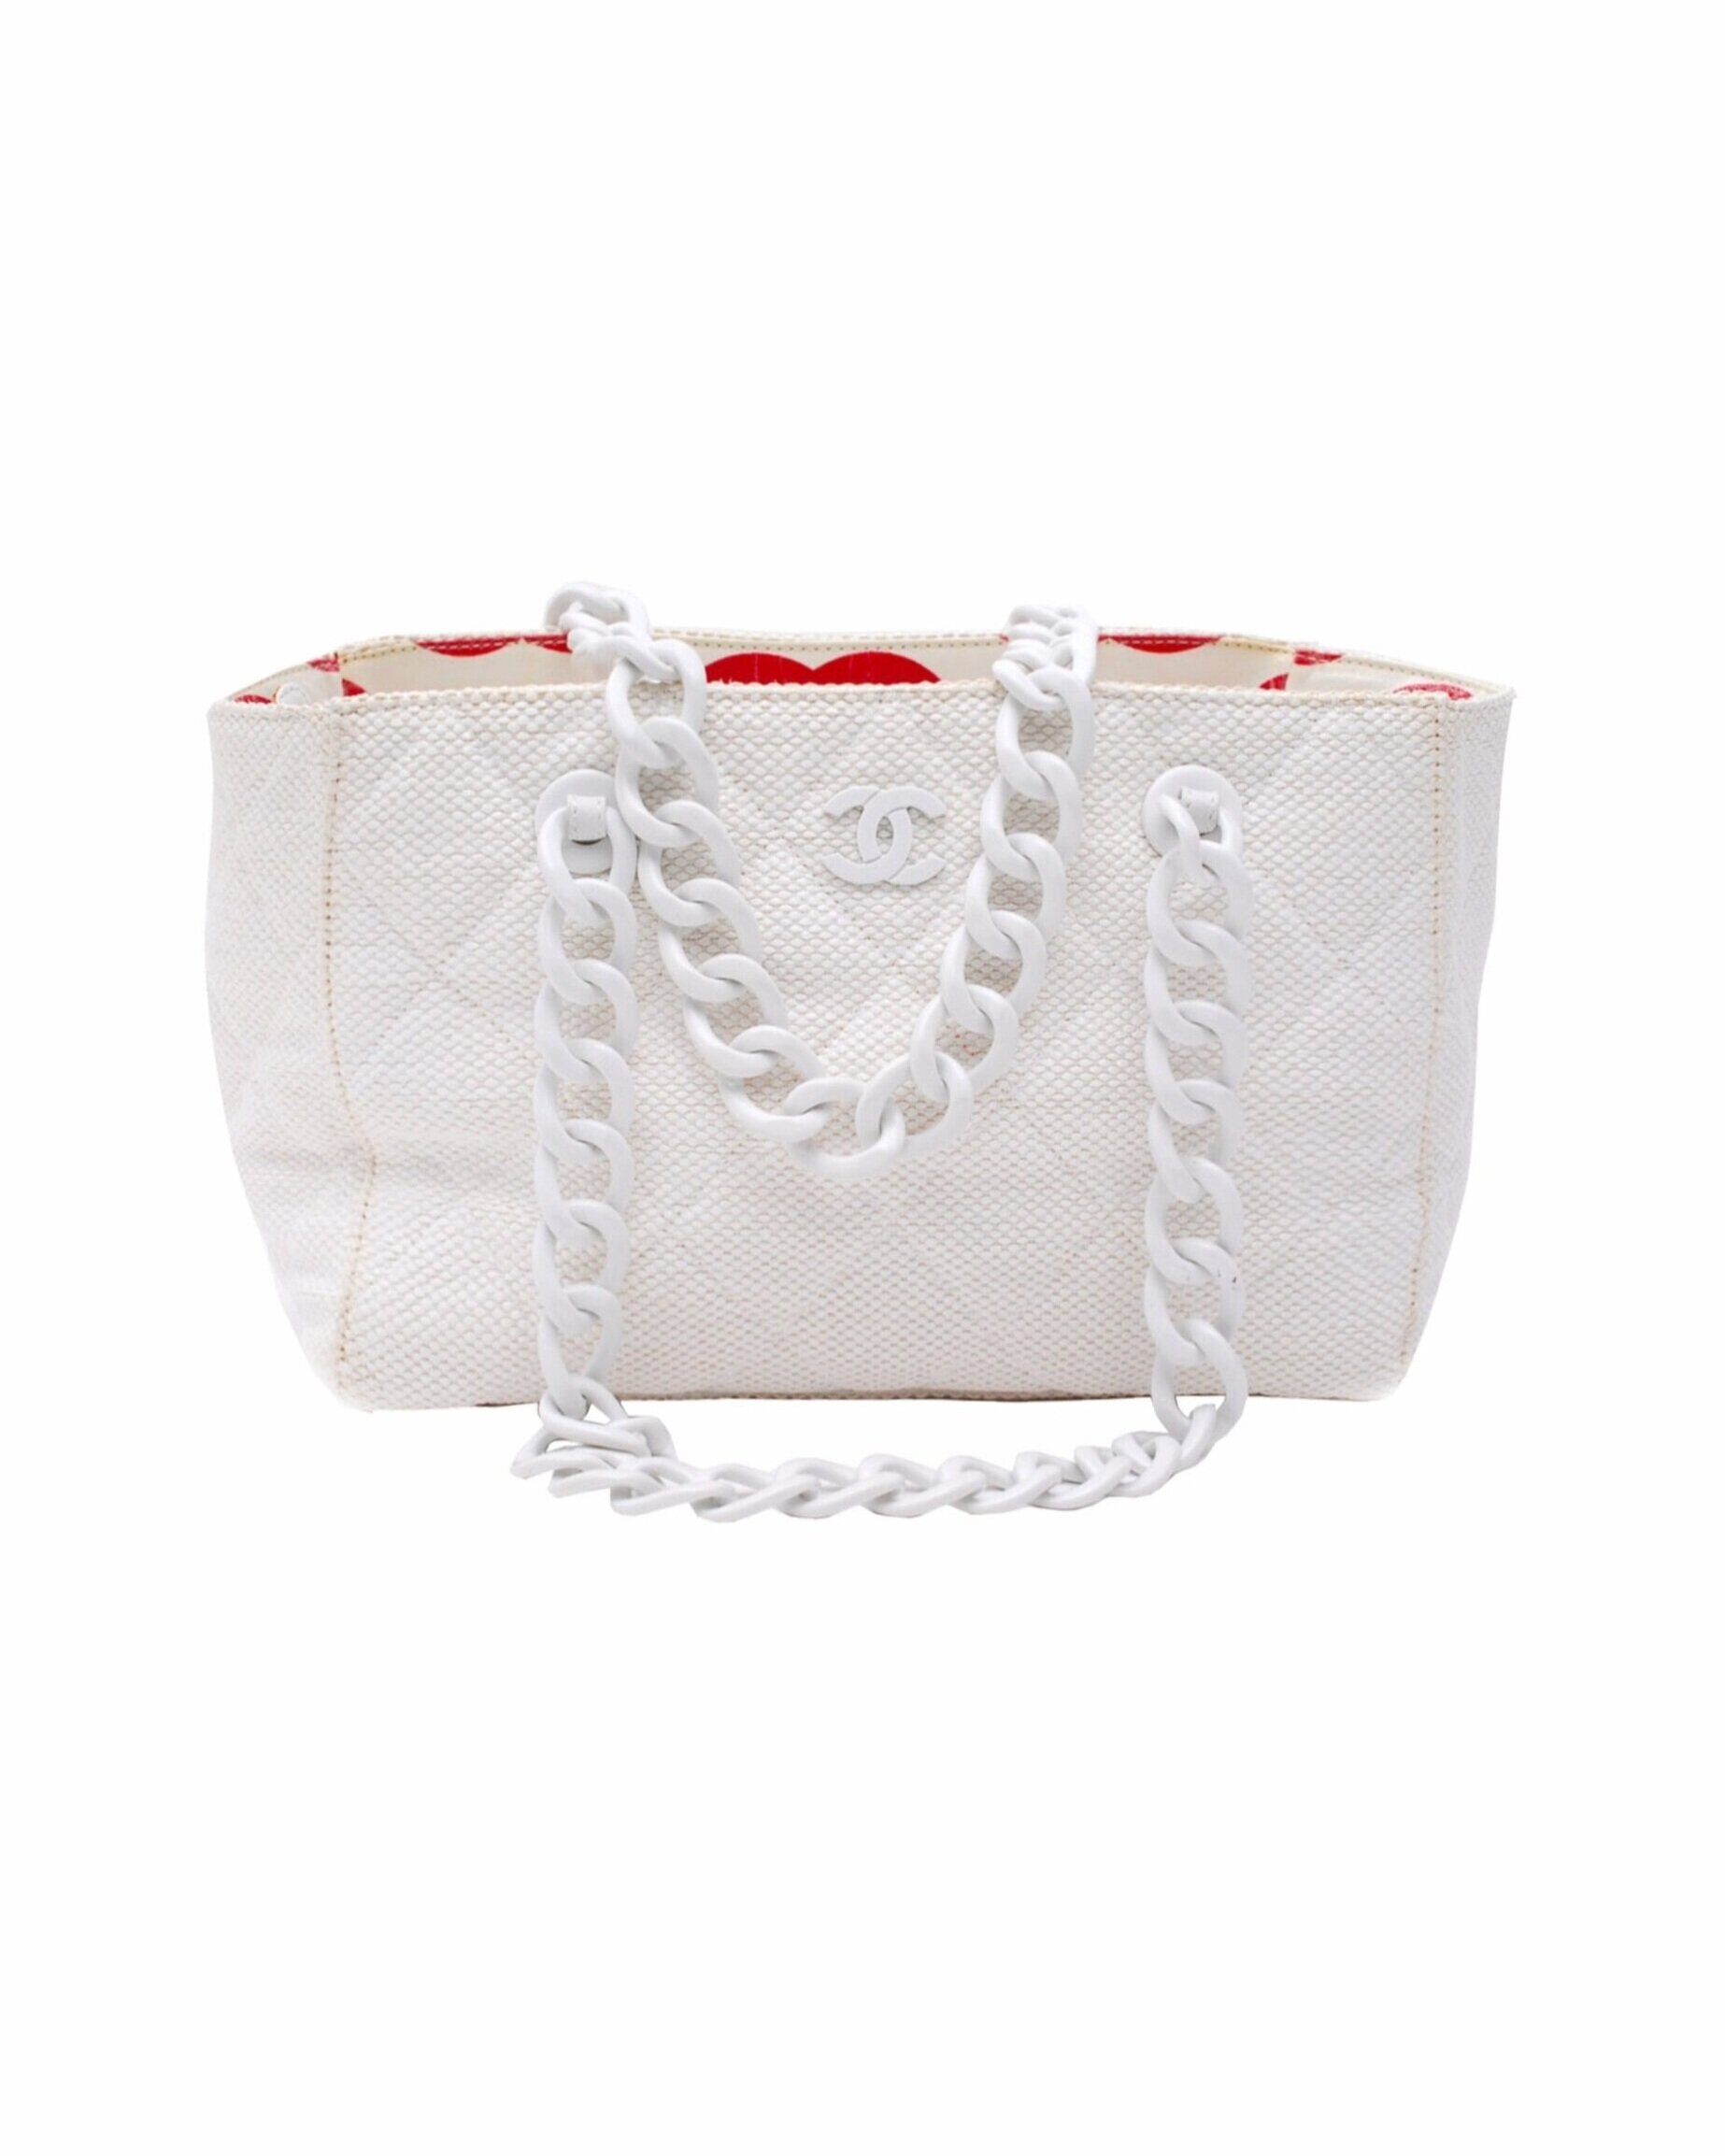 Handbag,Coco Chanel,off White,white ,plastic chain for Sale in Des